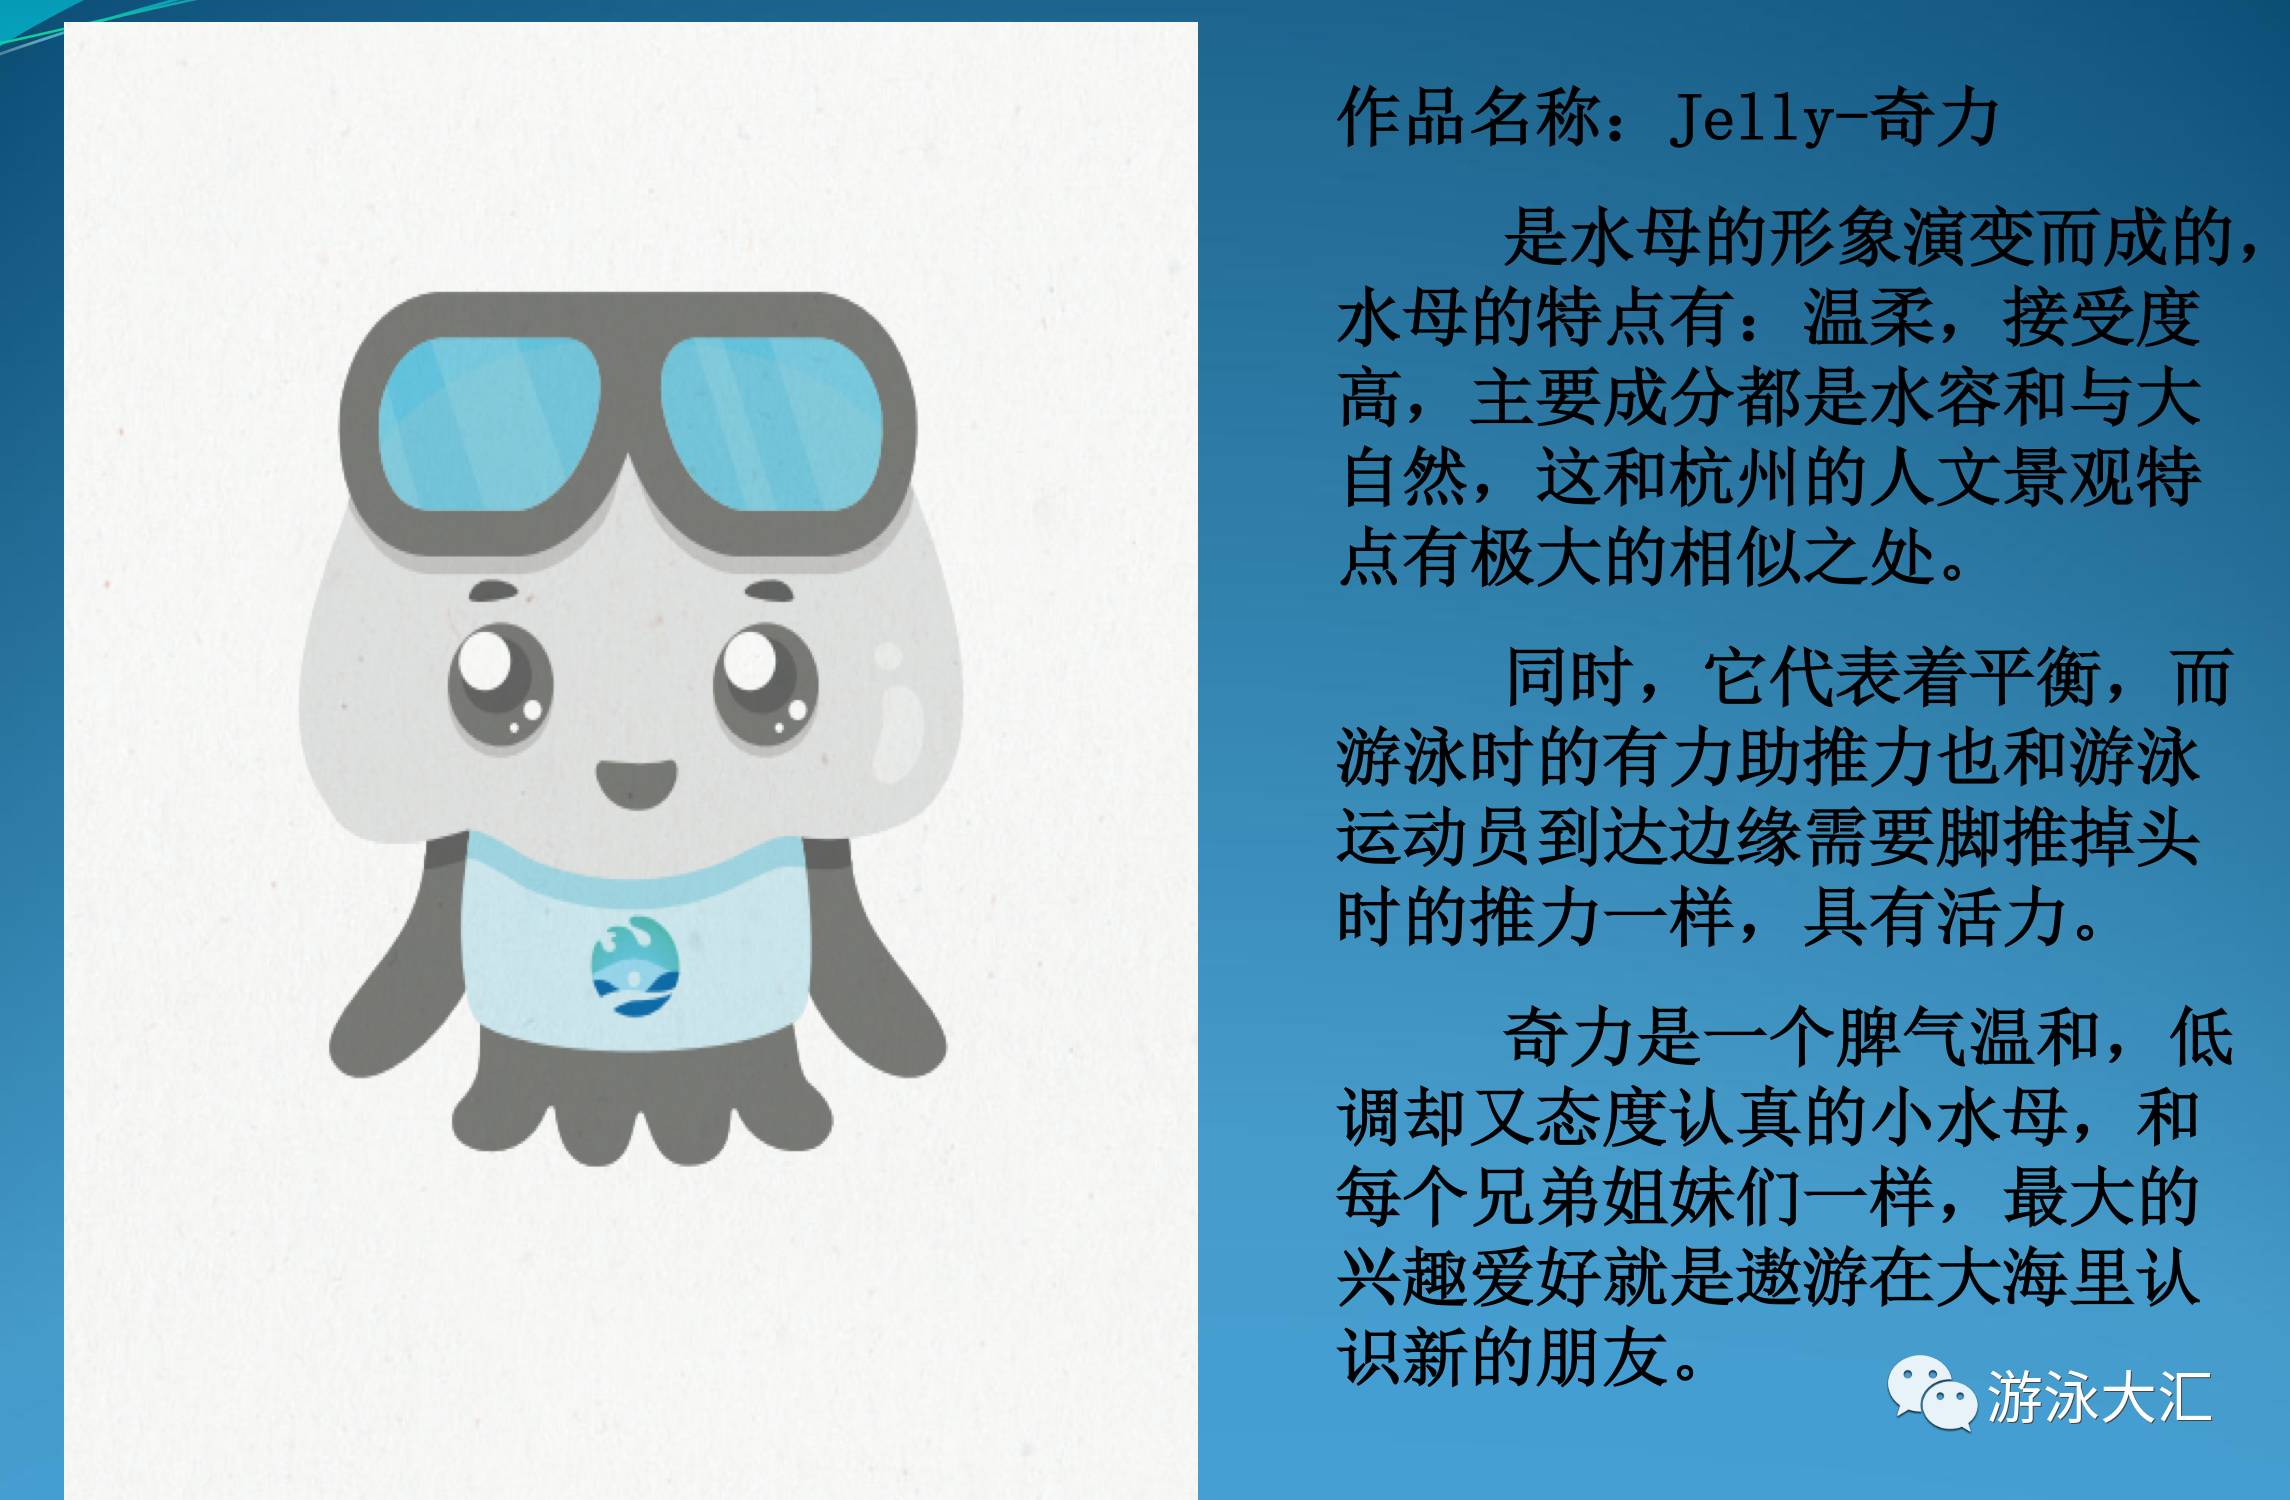 2018杭州短池游泳世锦赛会徽、吉祥物发布。